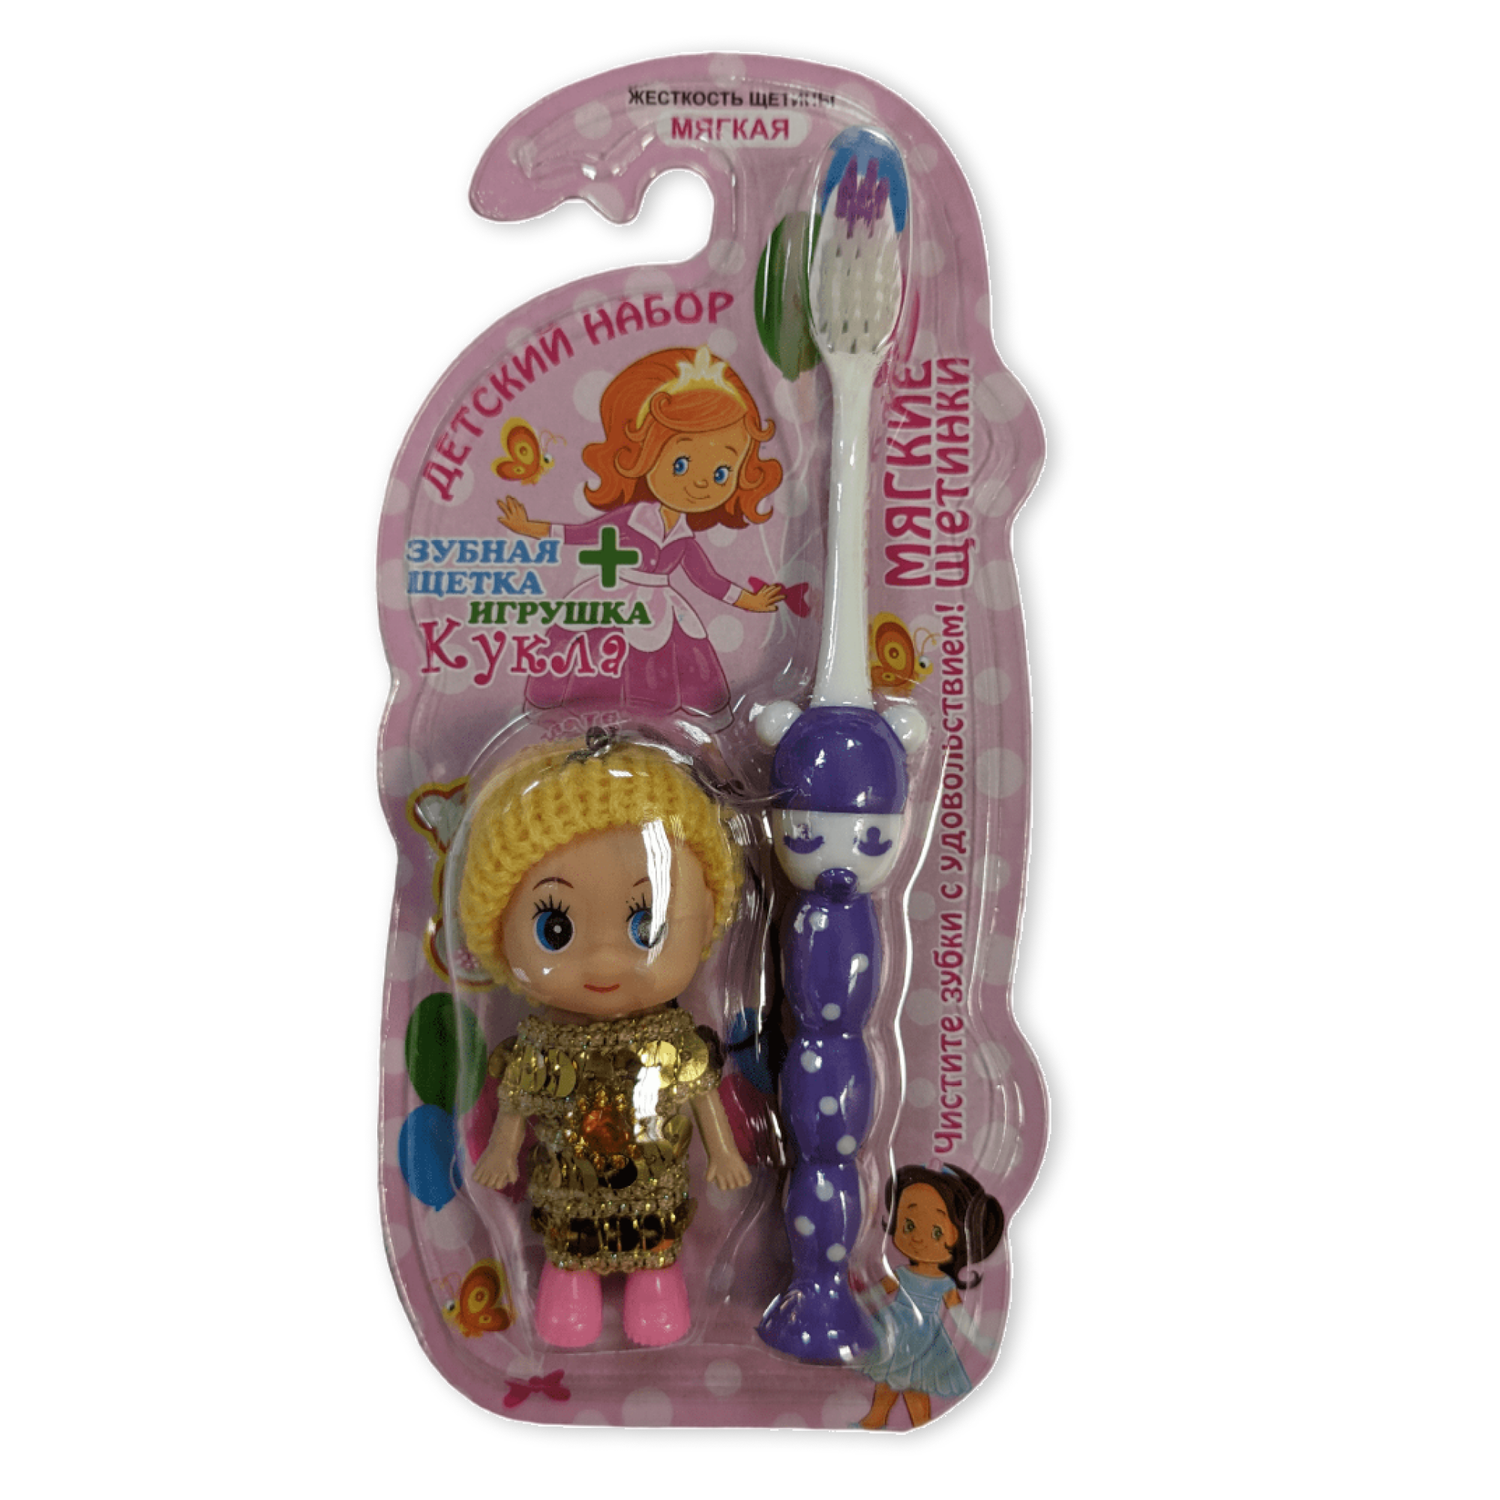 Зубная щетка детская Vilsen мягкая Девочка с присоской фиолетовая и игрушка Кукла - фото 1